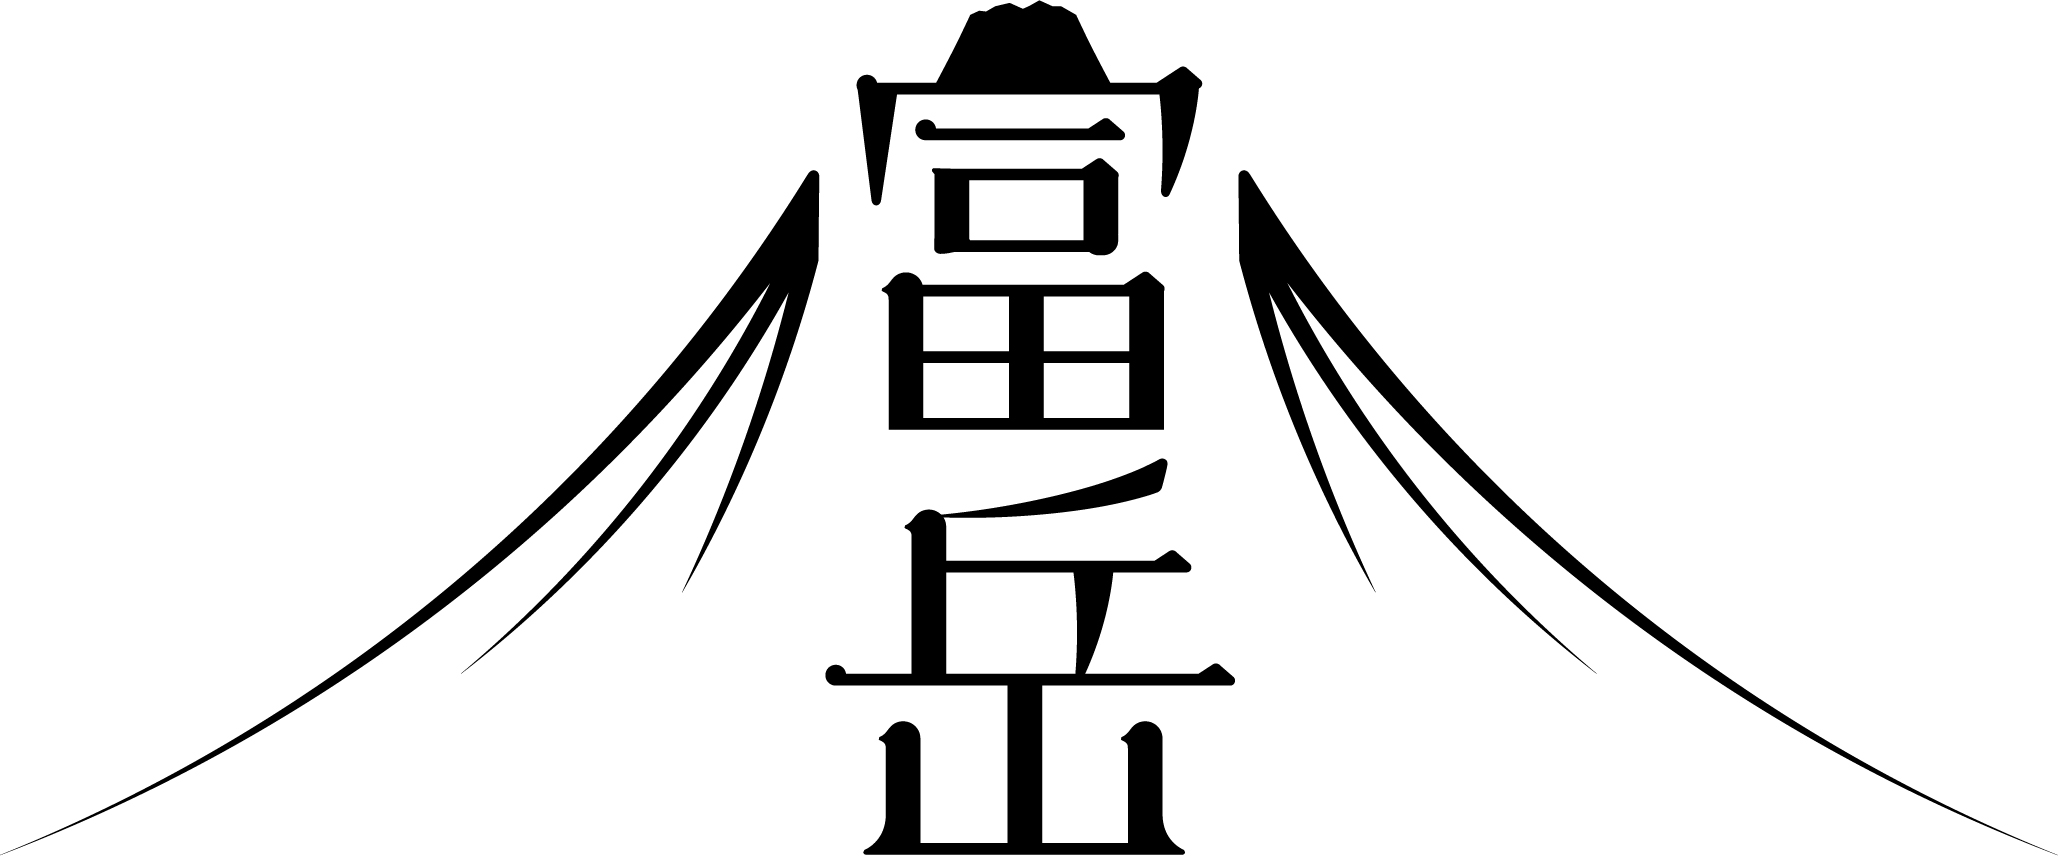 picture:the Fugaku logo